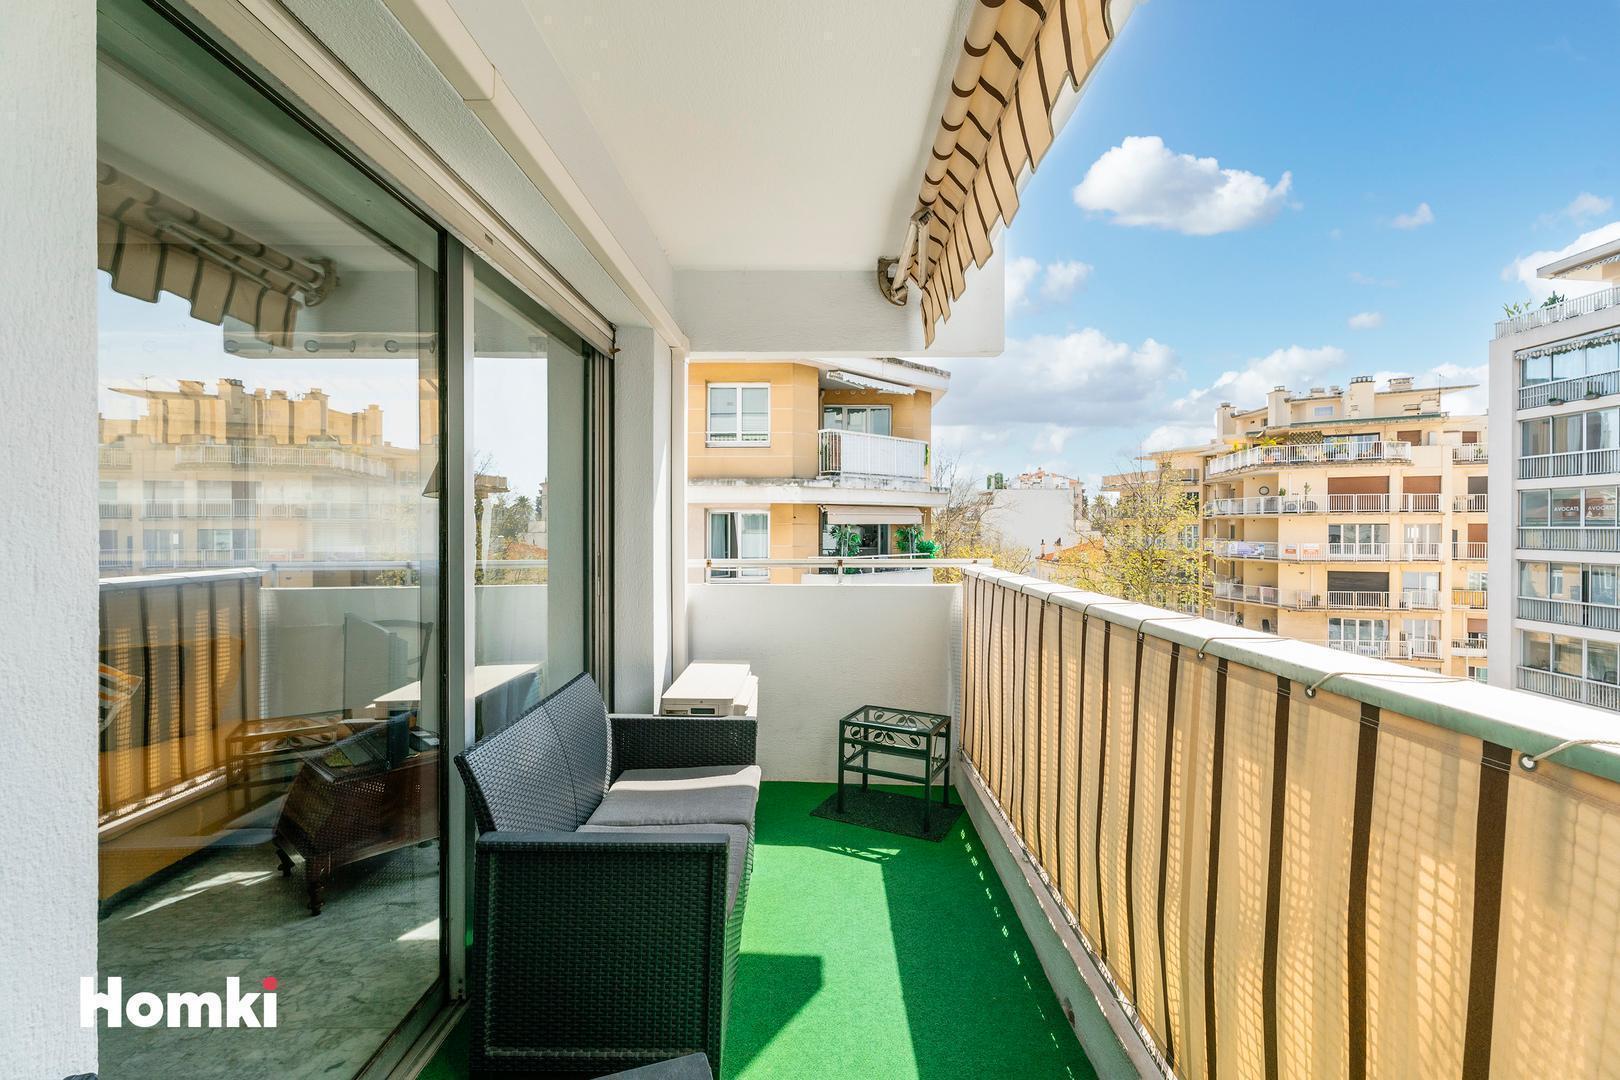 Homki - Vente Appartement  de 66.0 m² à Cannes 06400